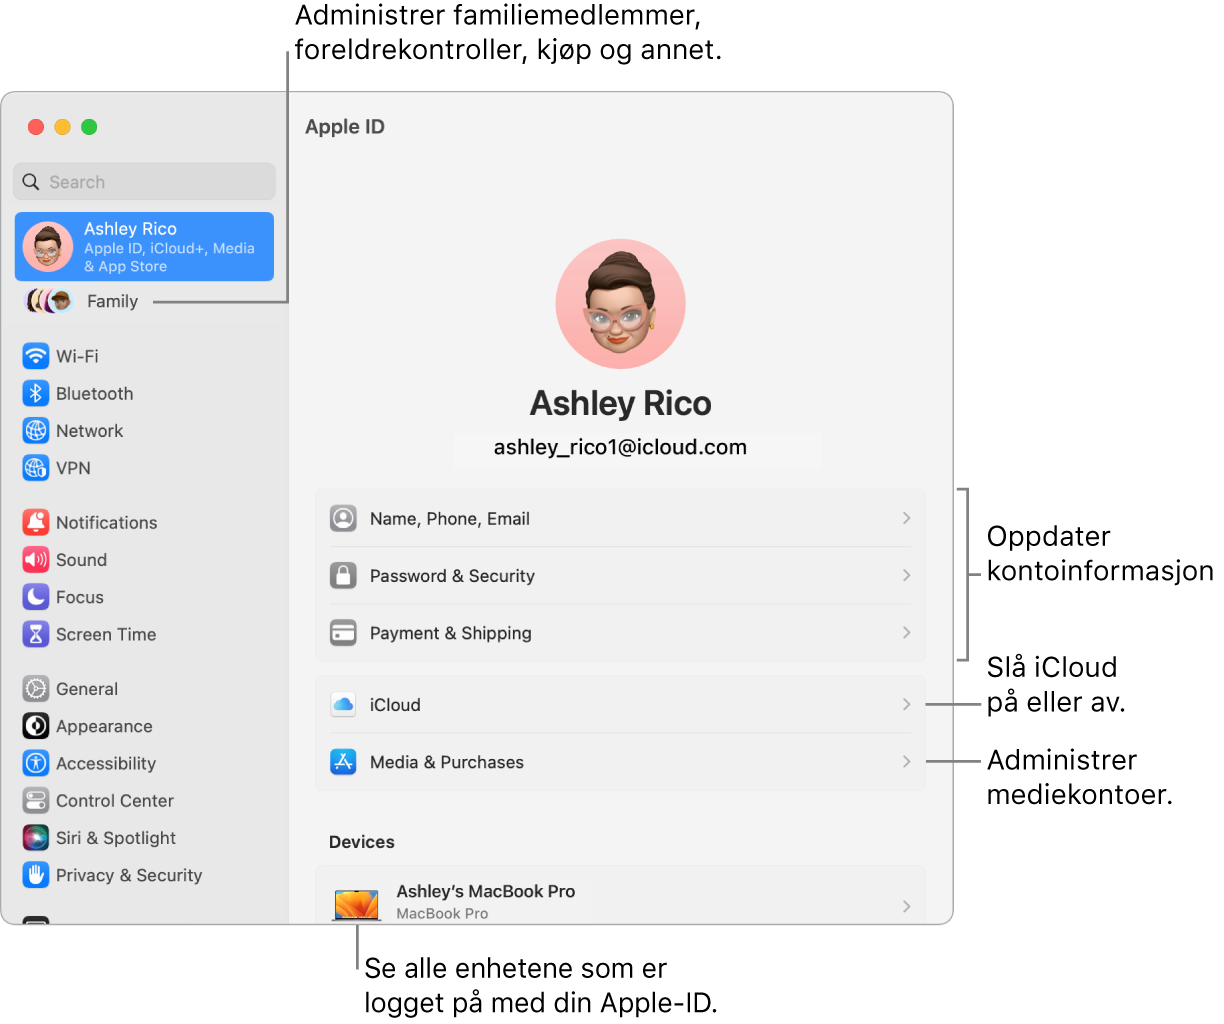 Apple-ID-innstillinger i Systeminnstillinger med forklaringer for hvordan du oppdaterer kontoinformasjon, slår av eller på iCloud-funksjoner, administrerer mediekontoer, og Familie, der du kan administrere familiemedlemmer, foreldrekontroller, kjøp og mer.